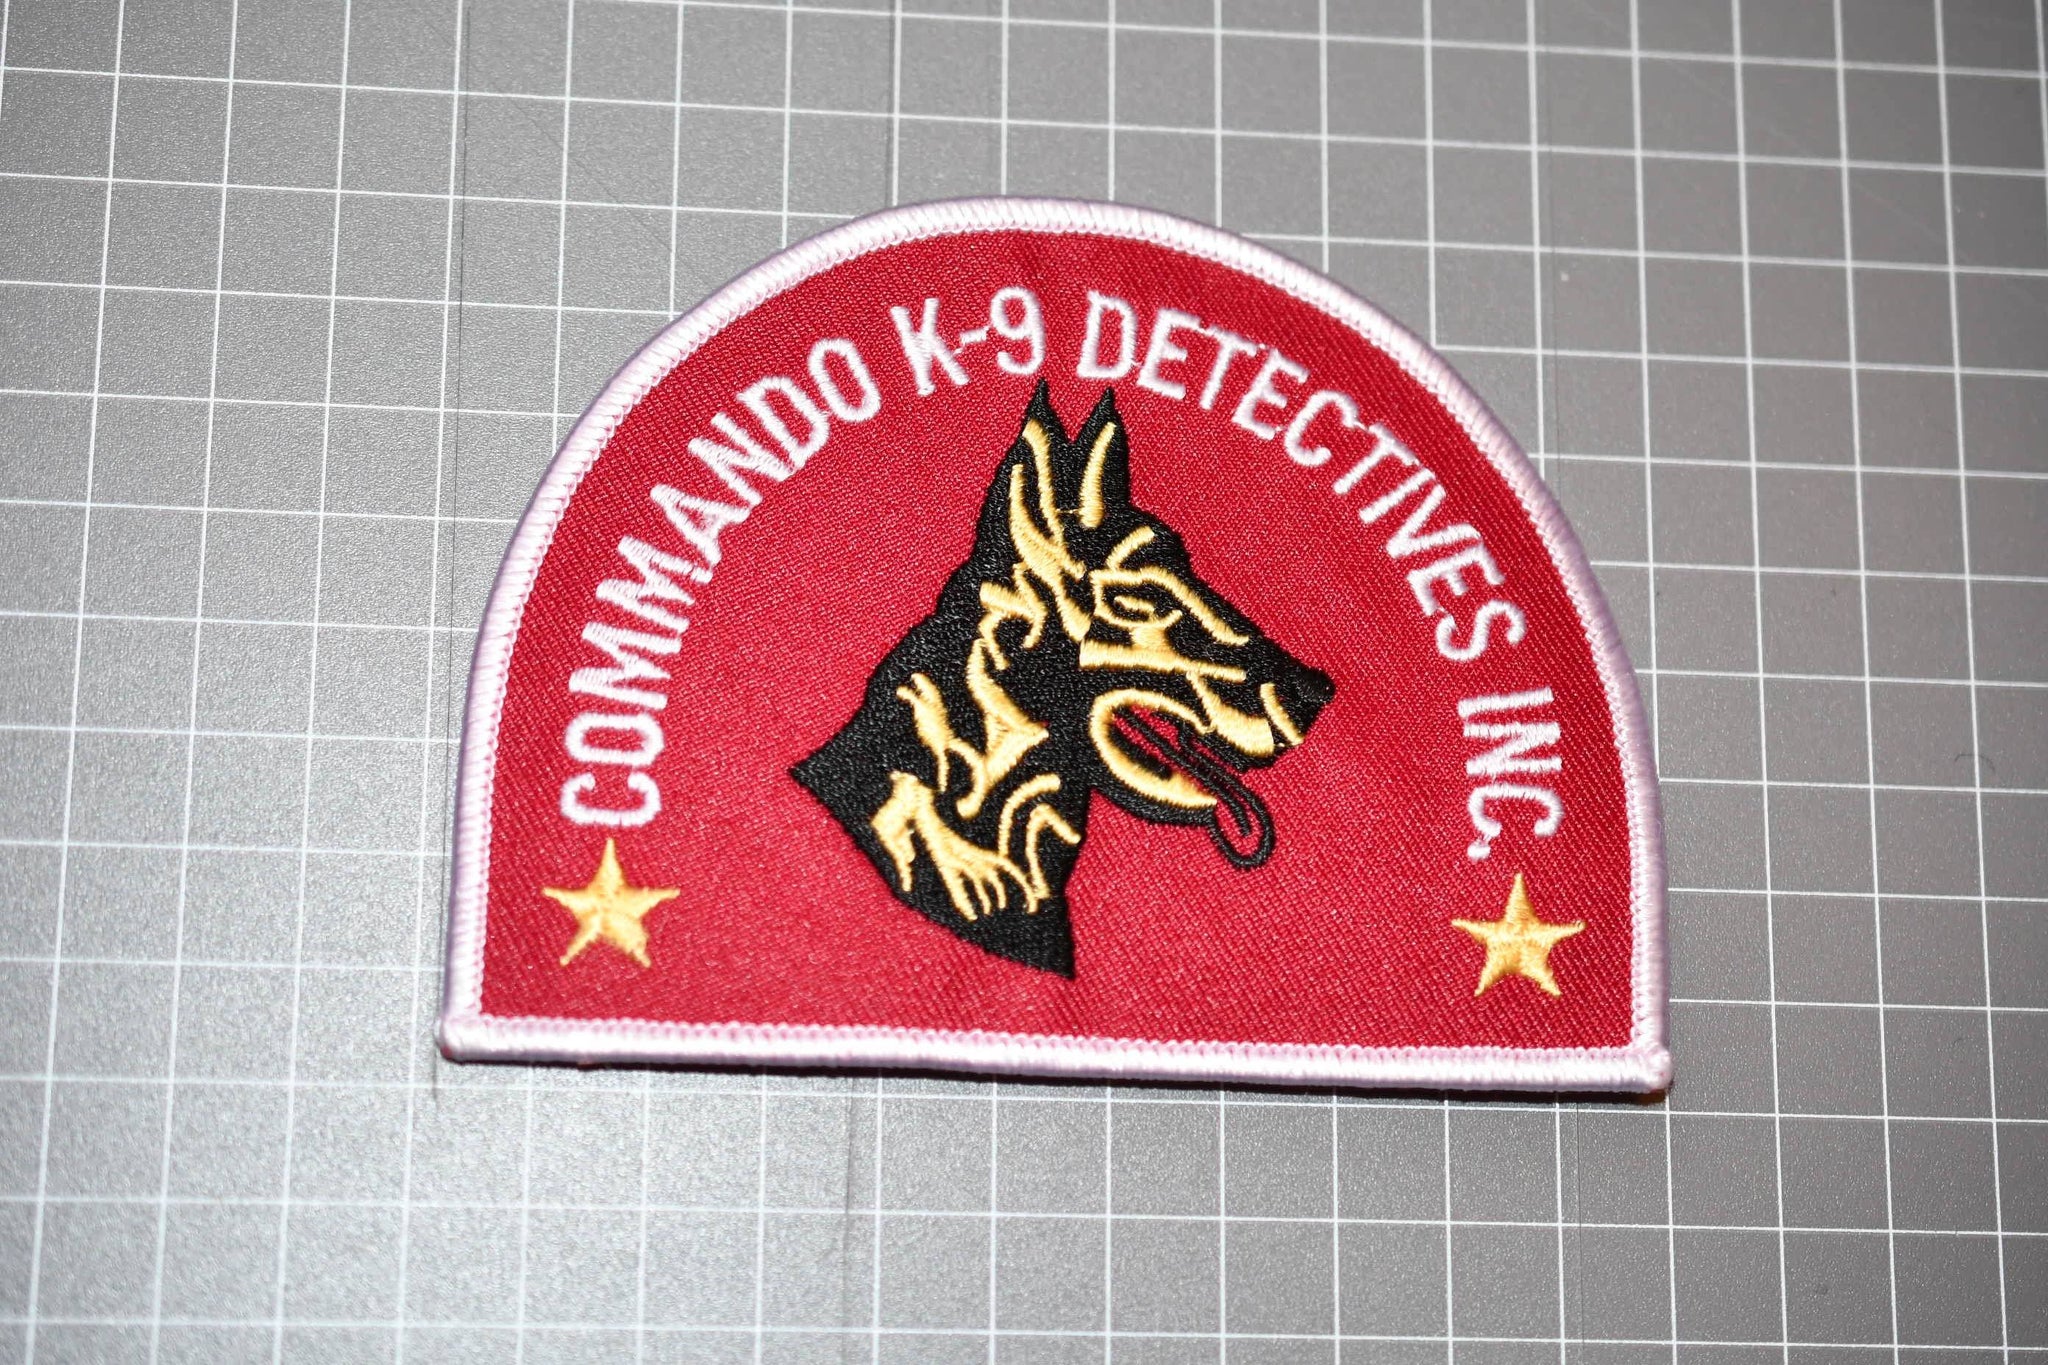 Commando K9 Detectives Inc. Patch (B1)